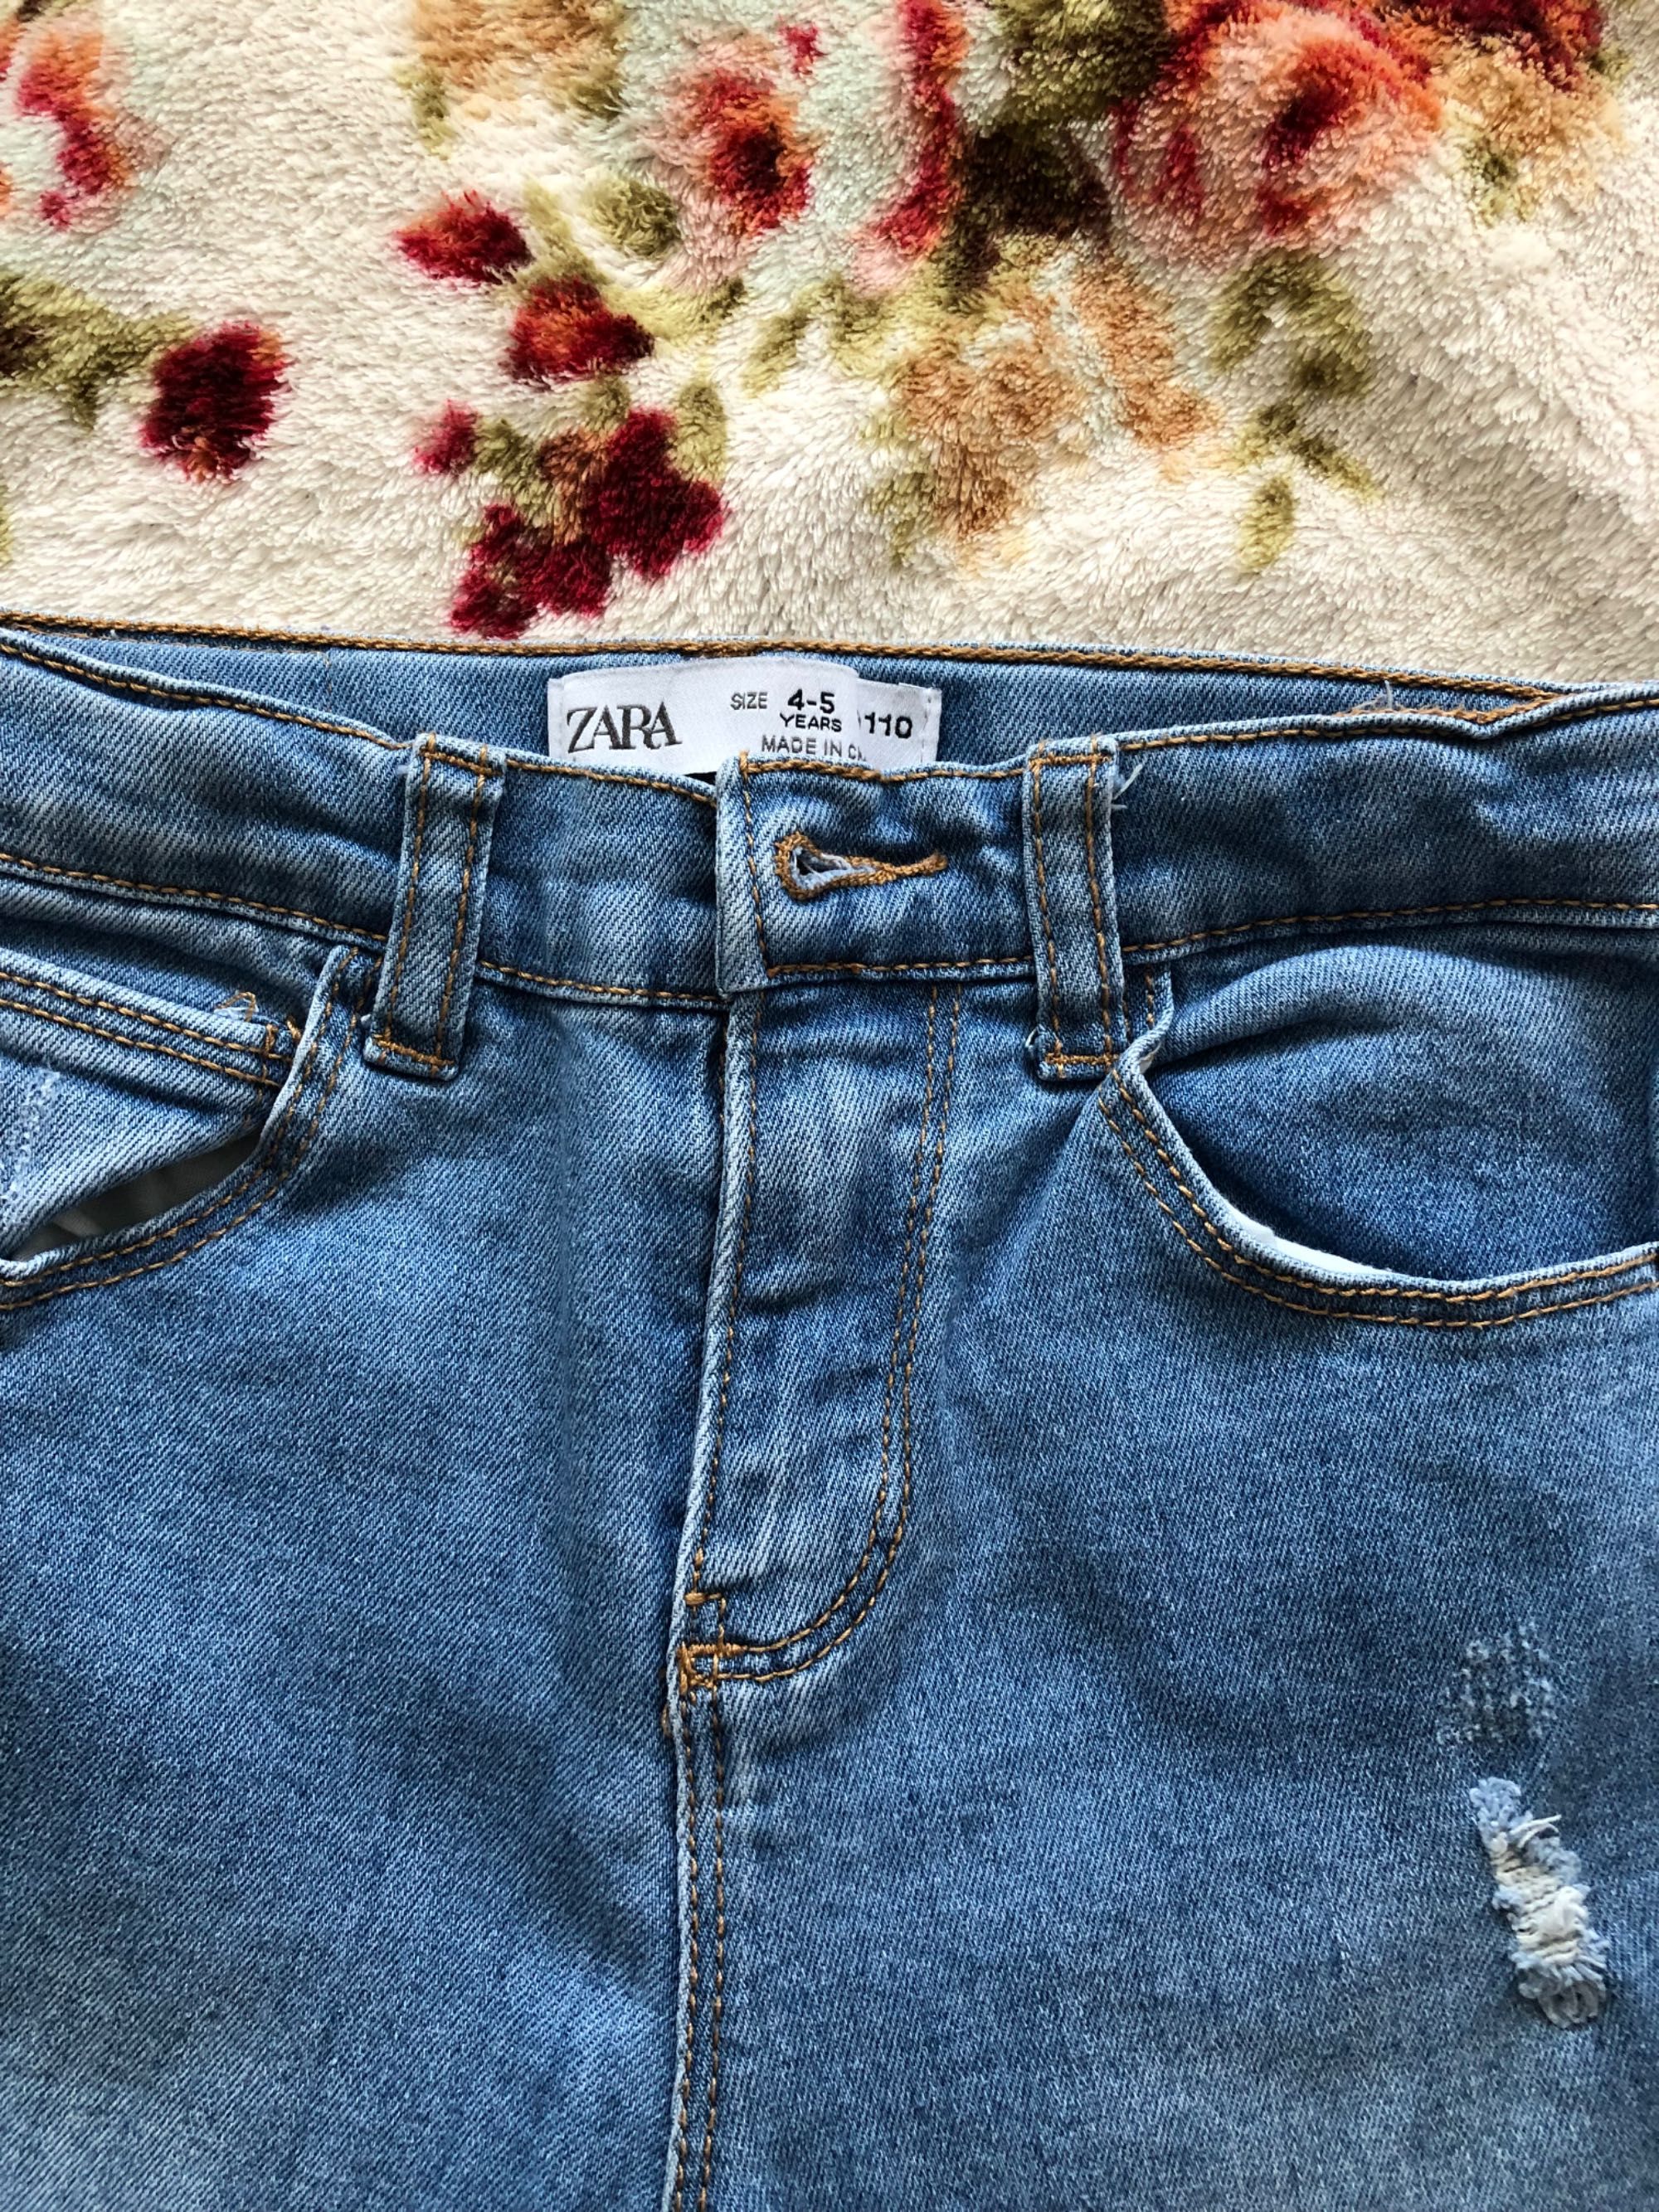 Spodnie dżinsowe rozmiar 110 Zara